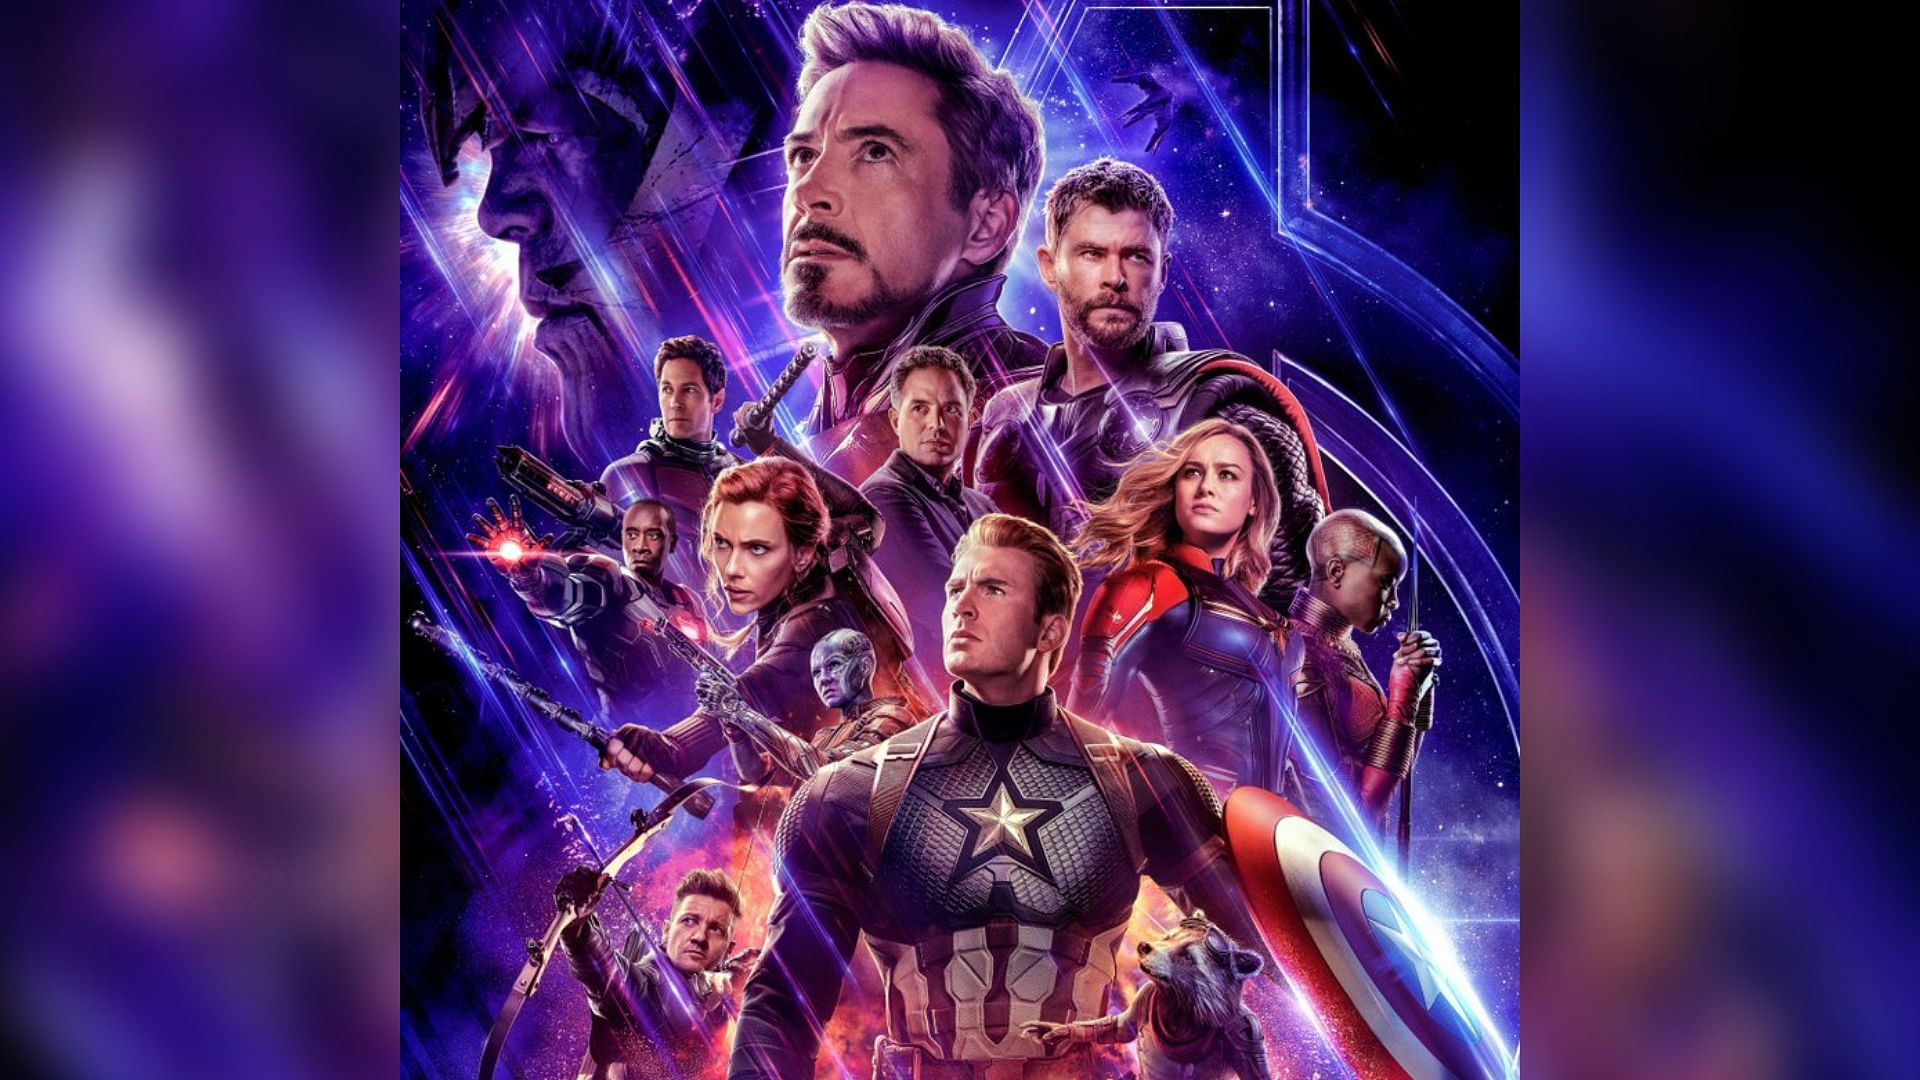 The first poster for <i>Avengers: Endgame</i>.